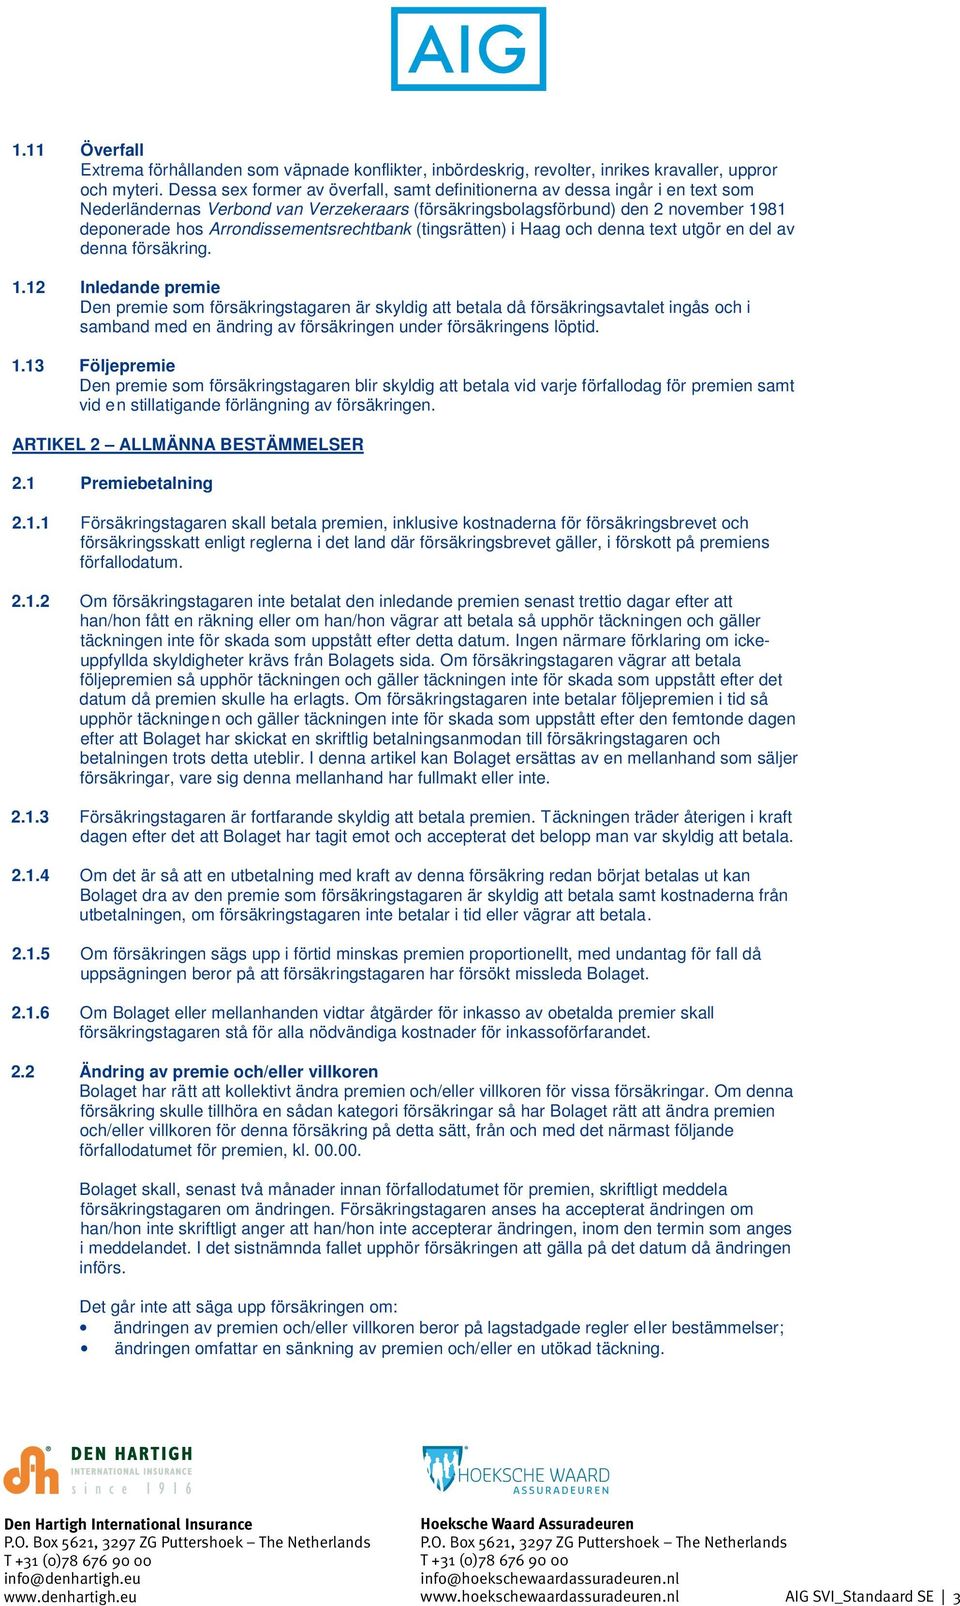 Arrondissementsrechtbank (tingsrätten) i Haag och denna text utgör en del av denna försäkring. 1.